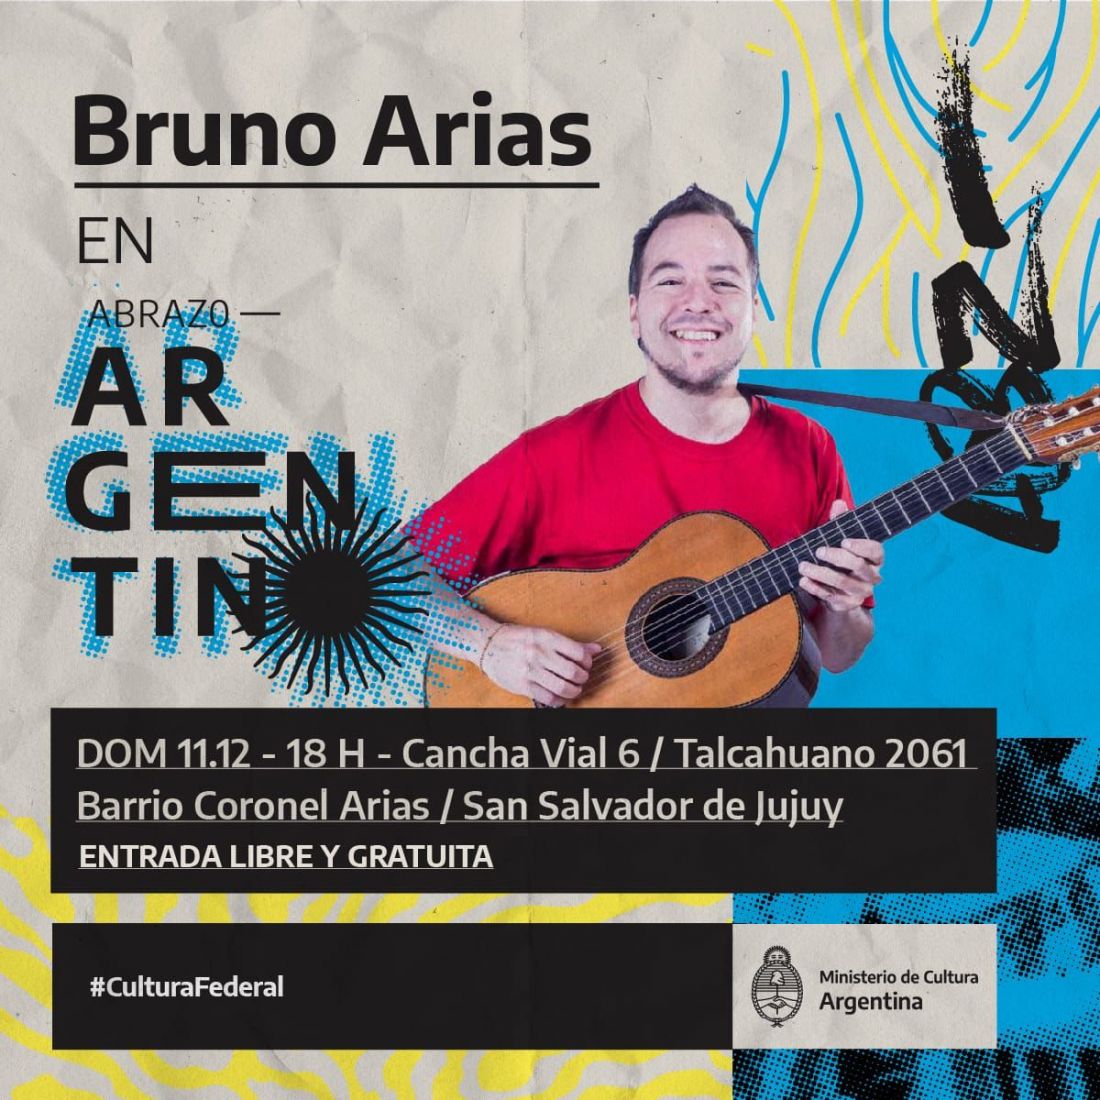 Hoy en el festival "Abrazo Argentino" estará Bruno Arias, Karicia y más artistas